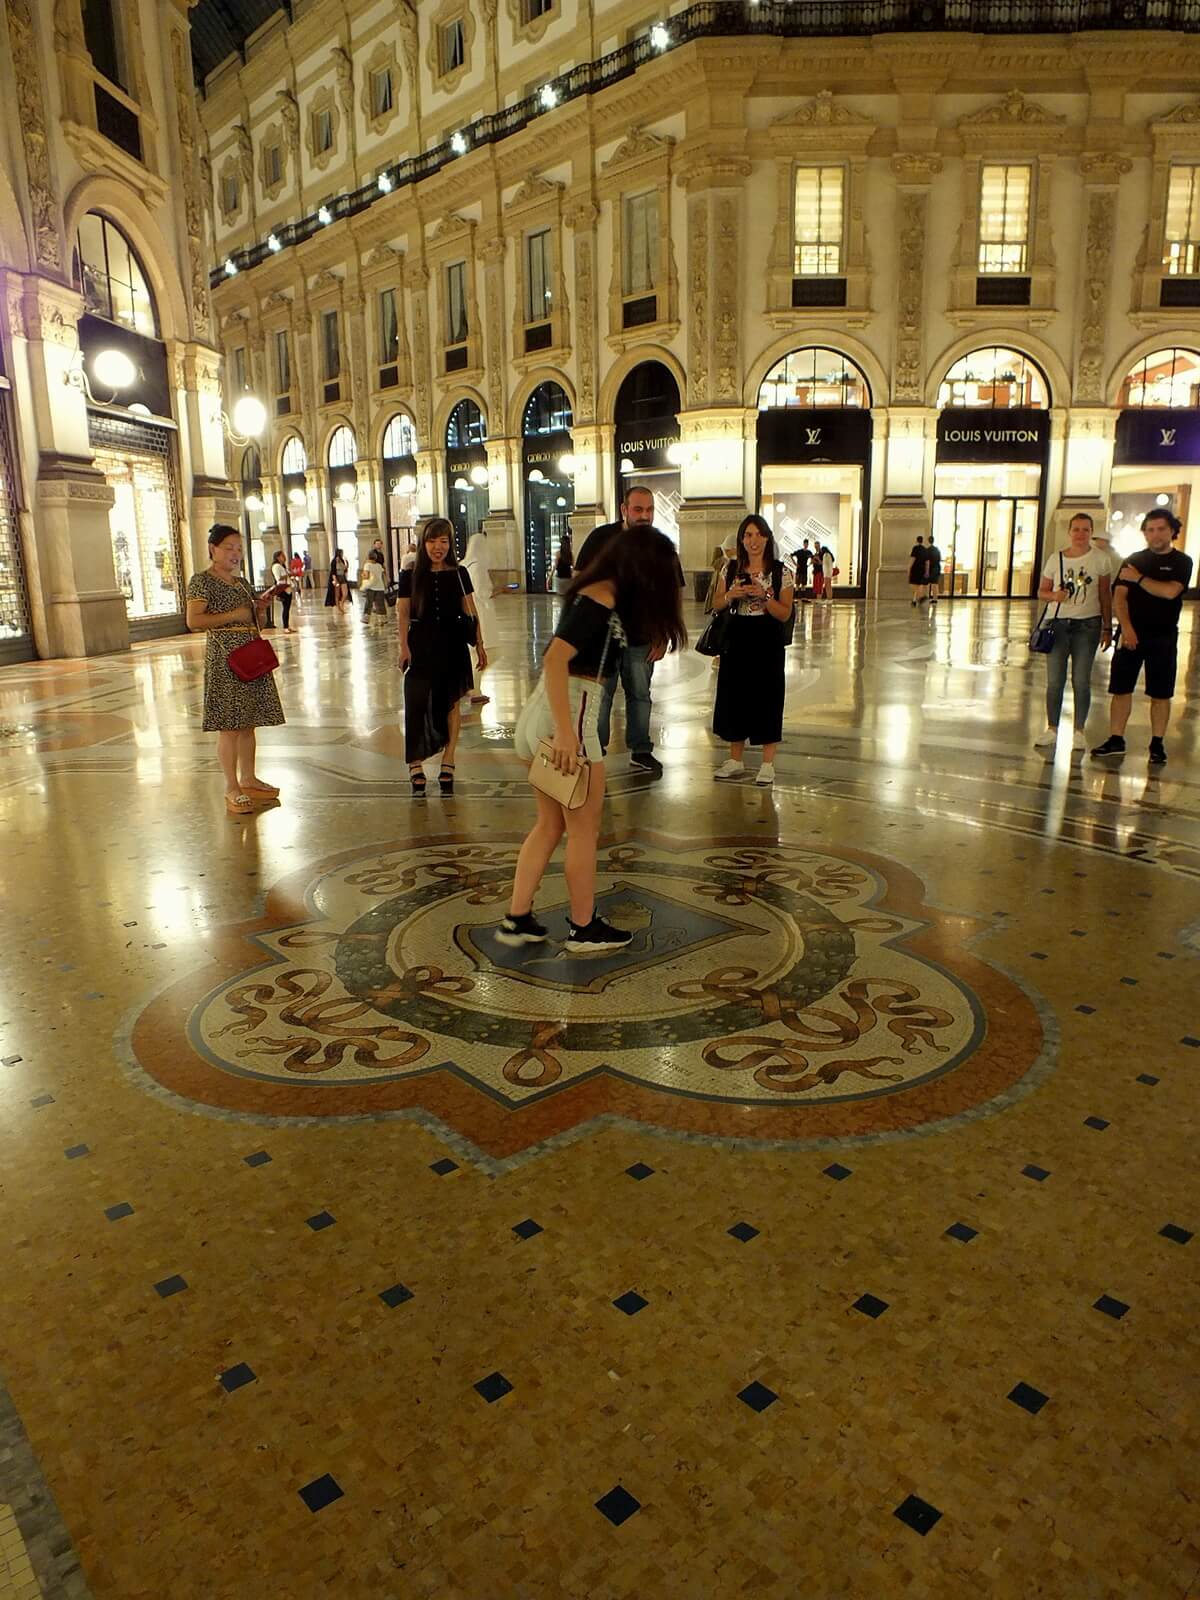 Galleria Vittorio Emanuele II Topuklarının Üzerinde Dönmeye Çalışanlar